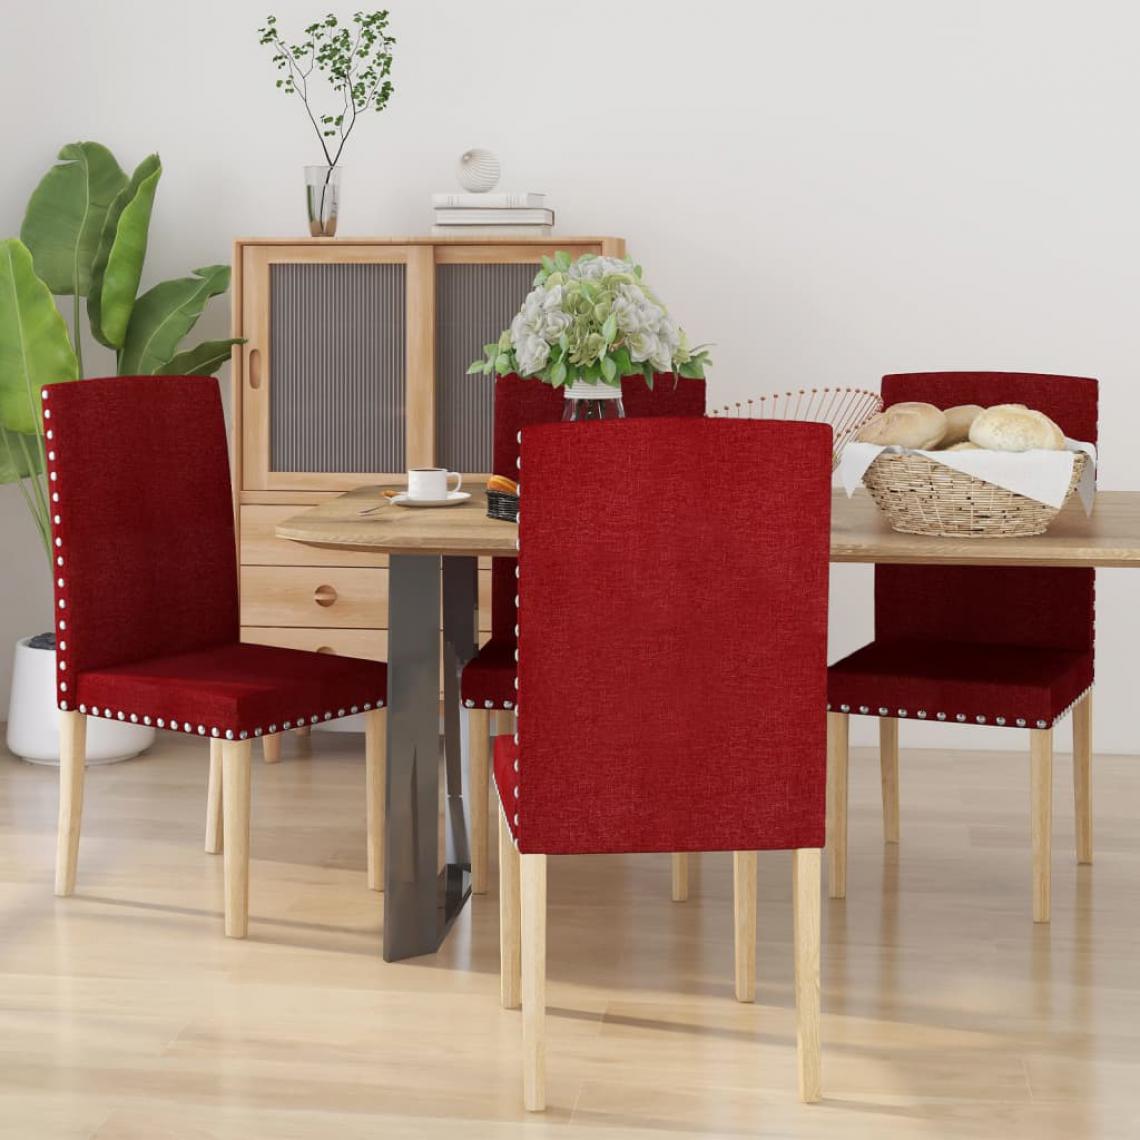 Vidaxl - vidaXL Chaises de salle à manger 4 pcs Rouge bordeaux Tissu - Chaises